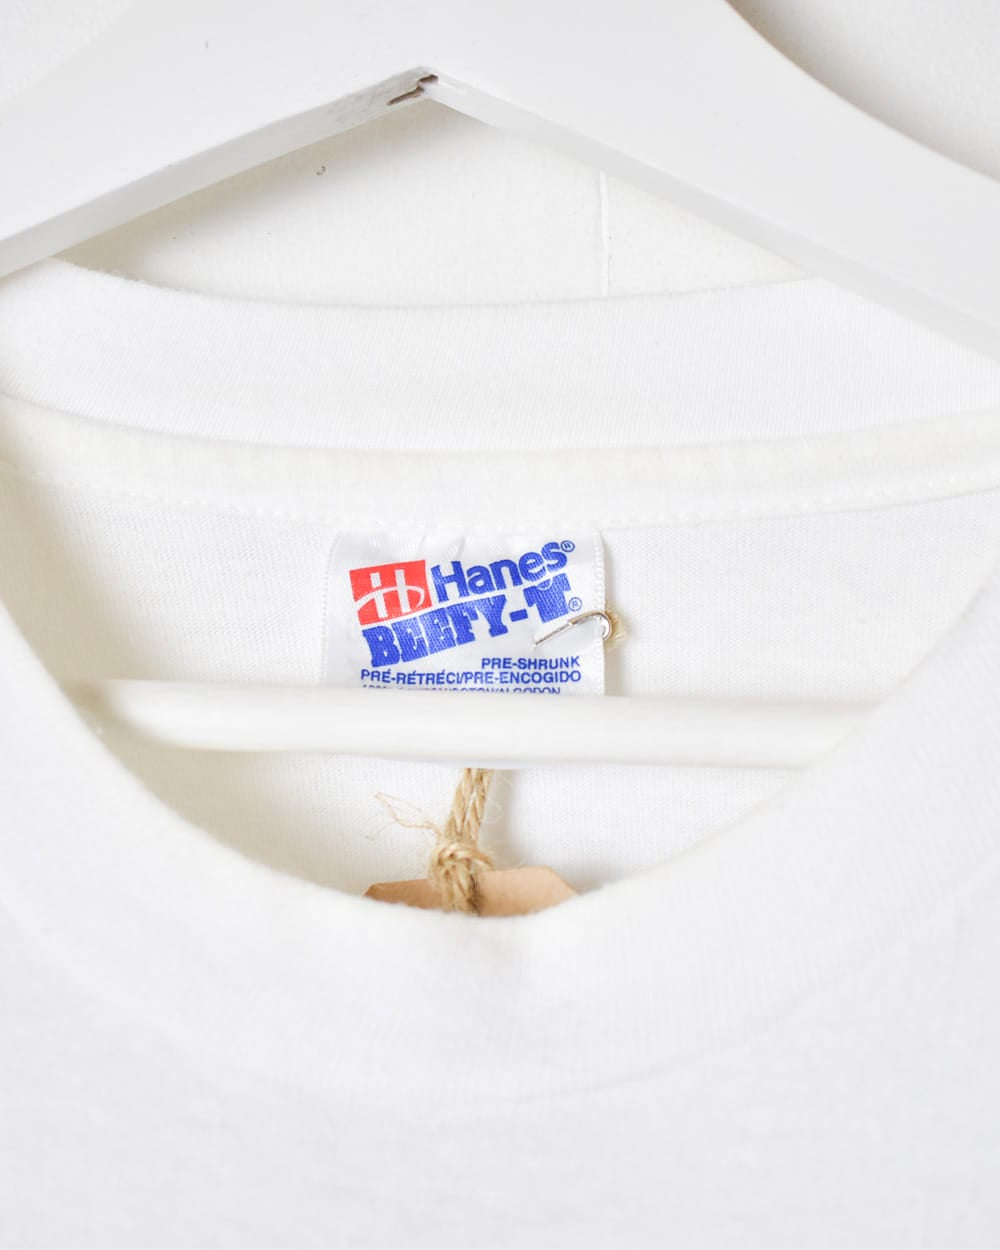 White Kong Sportswear Single Stitch T-Shirt - X-Large